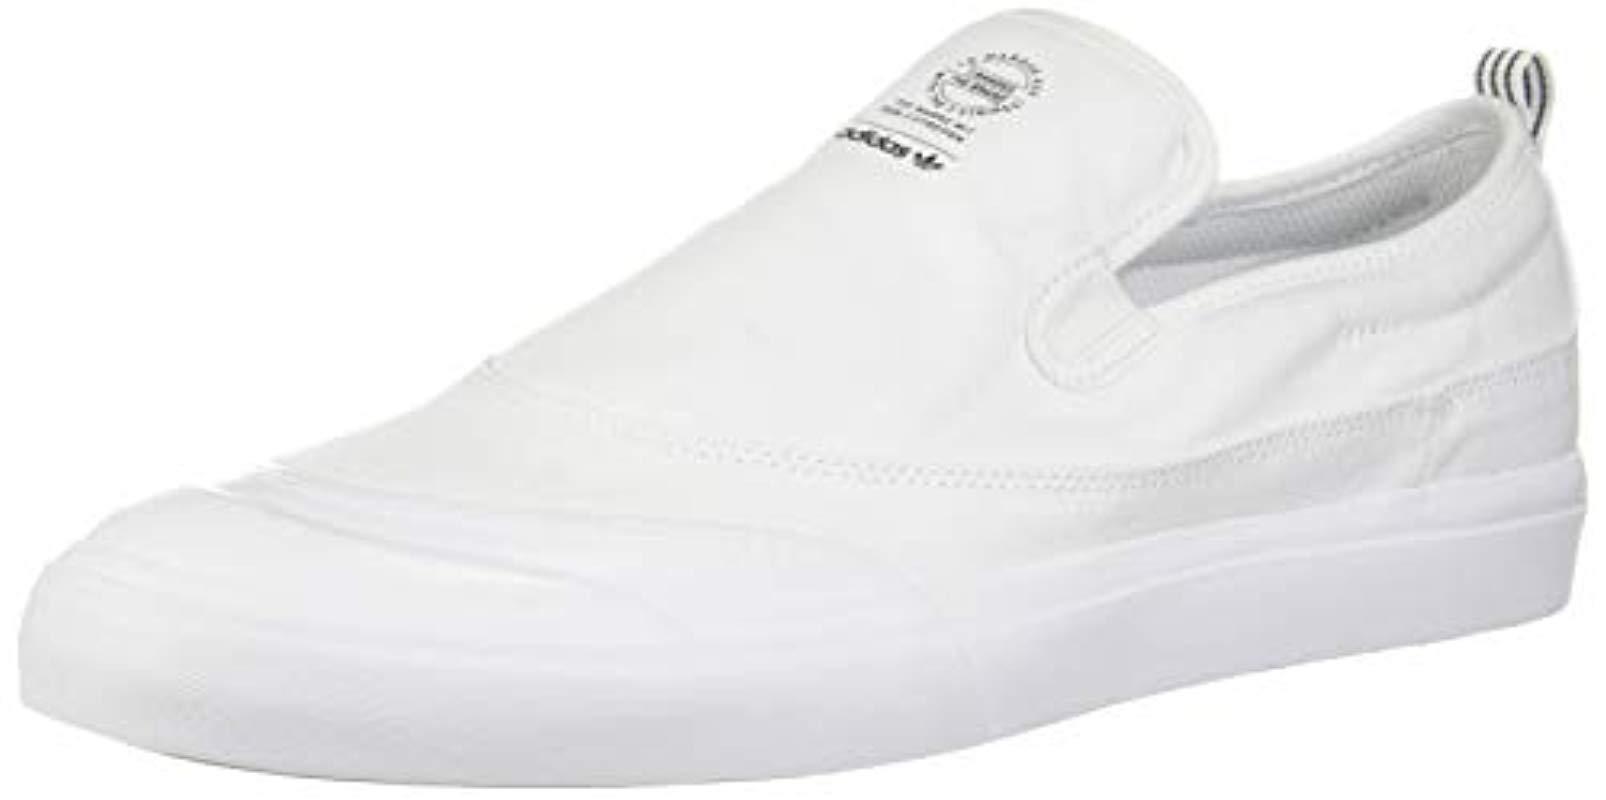 adidas Matchcourt Fashion Sneakers in White/White/White (White) for Men -  Lyst